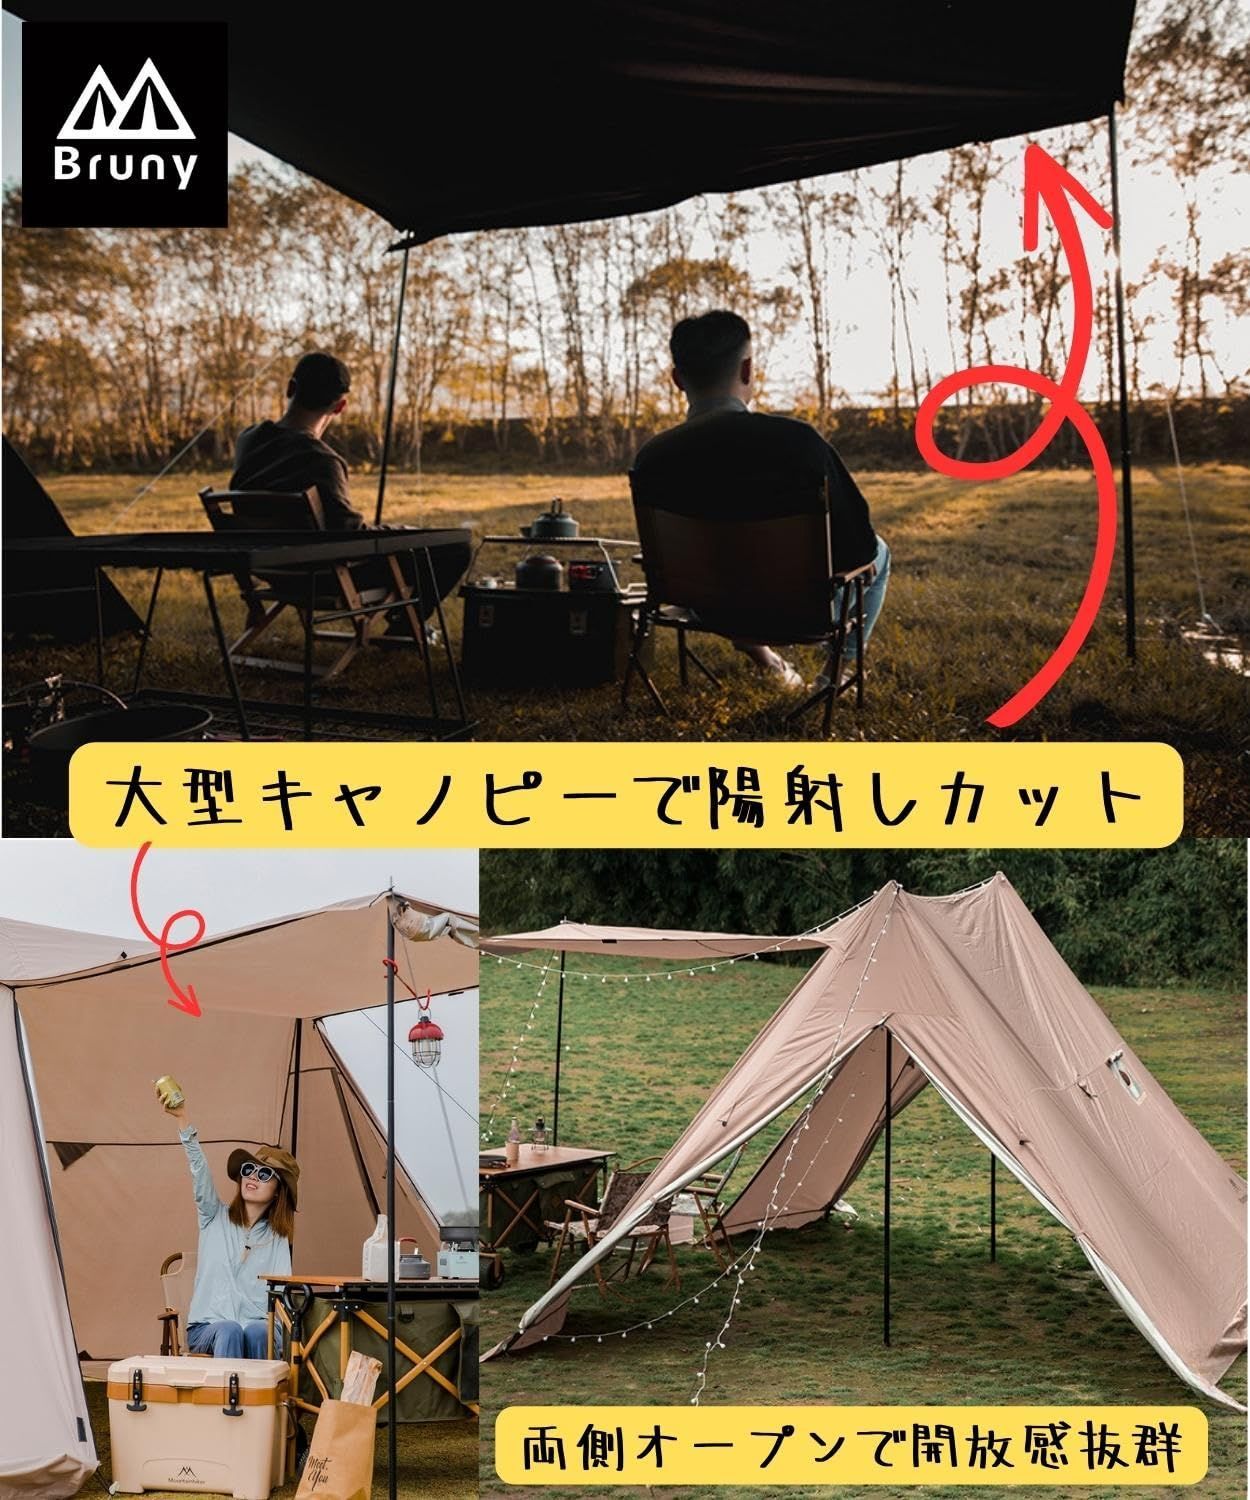 【色: ベージュ】ブルーニー パップテント 大型 軍幕テント タープ テント キ